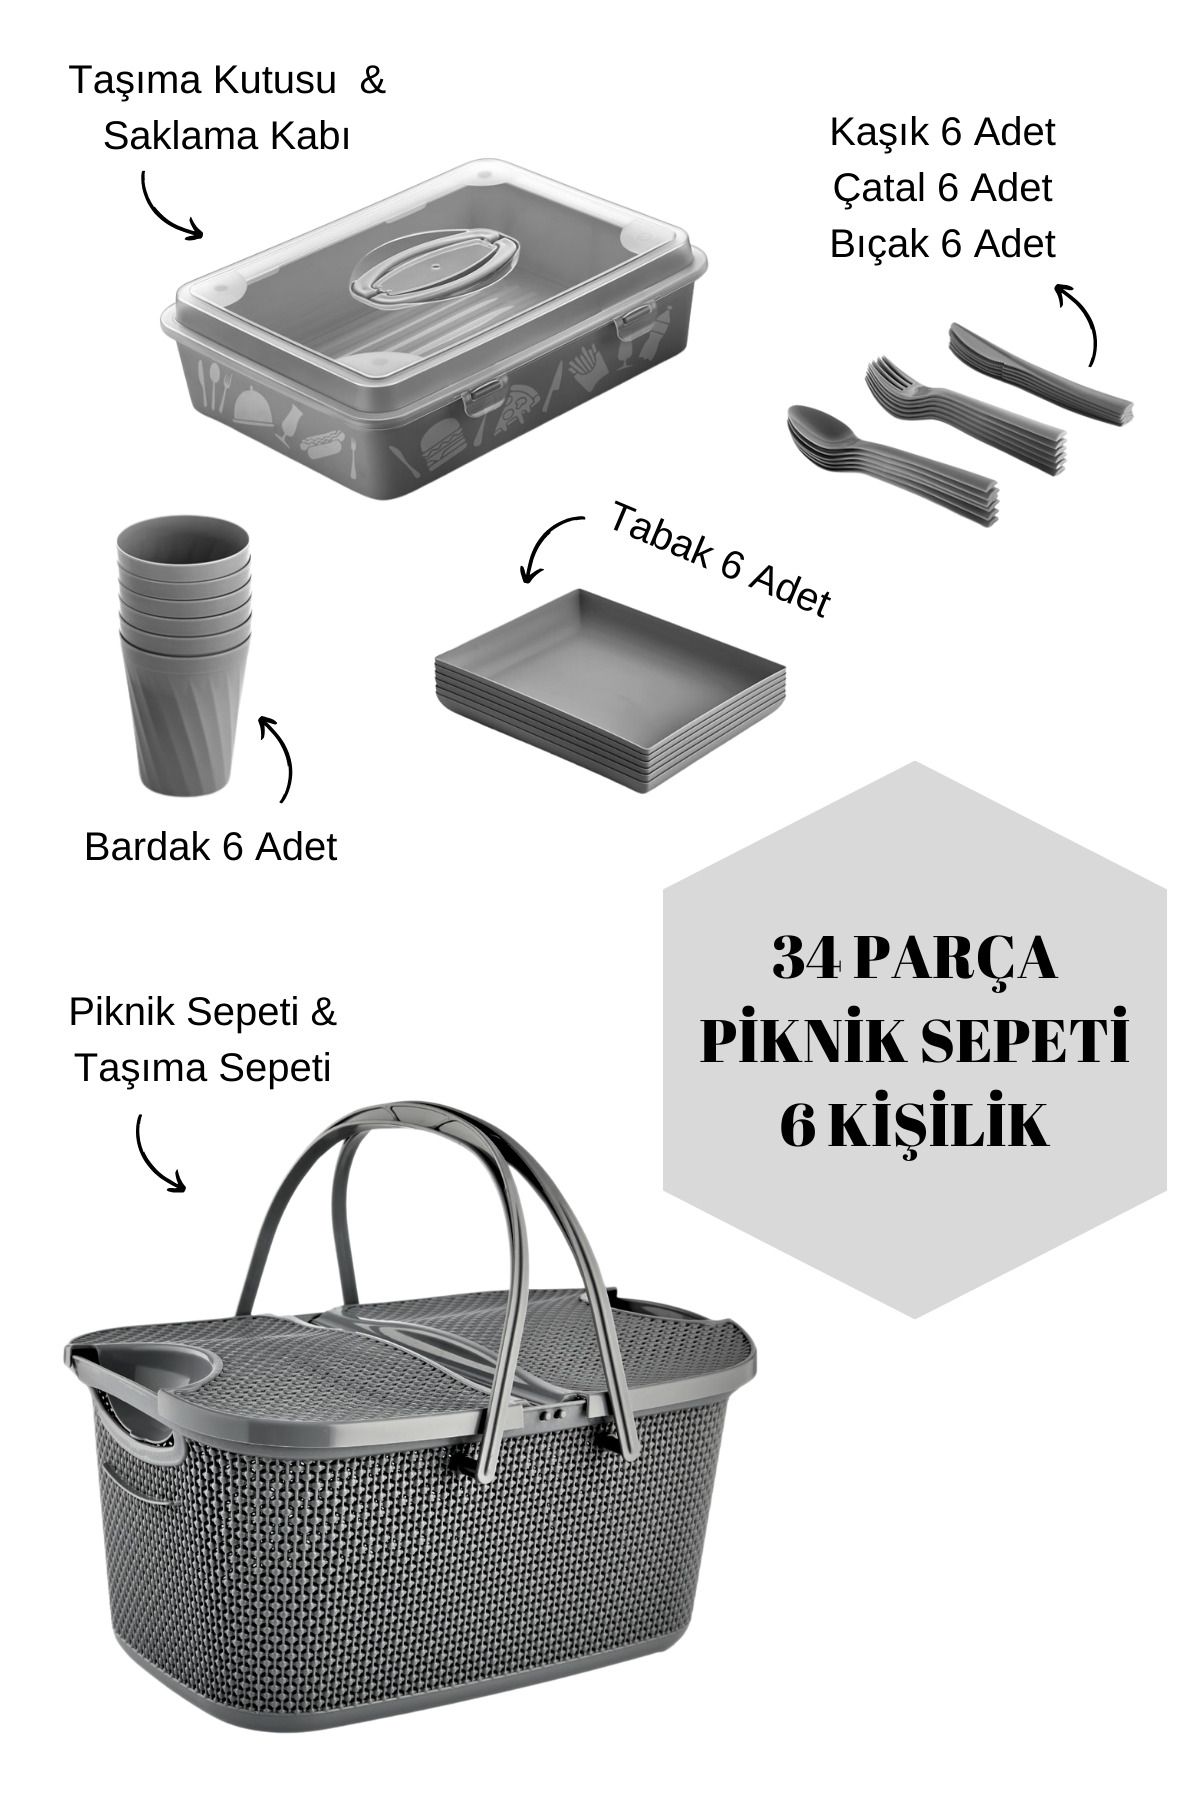 Carpekitchen Piknik Seti ve Sepeti 34 Parça 6 Kişilik Bardak Çatal Kaşık Tabak ve Taşıma Kutusu ve Piknik Sepeti